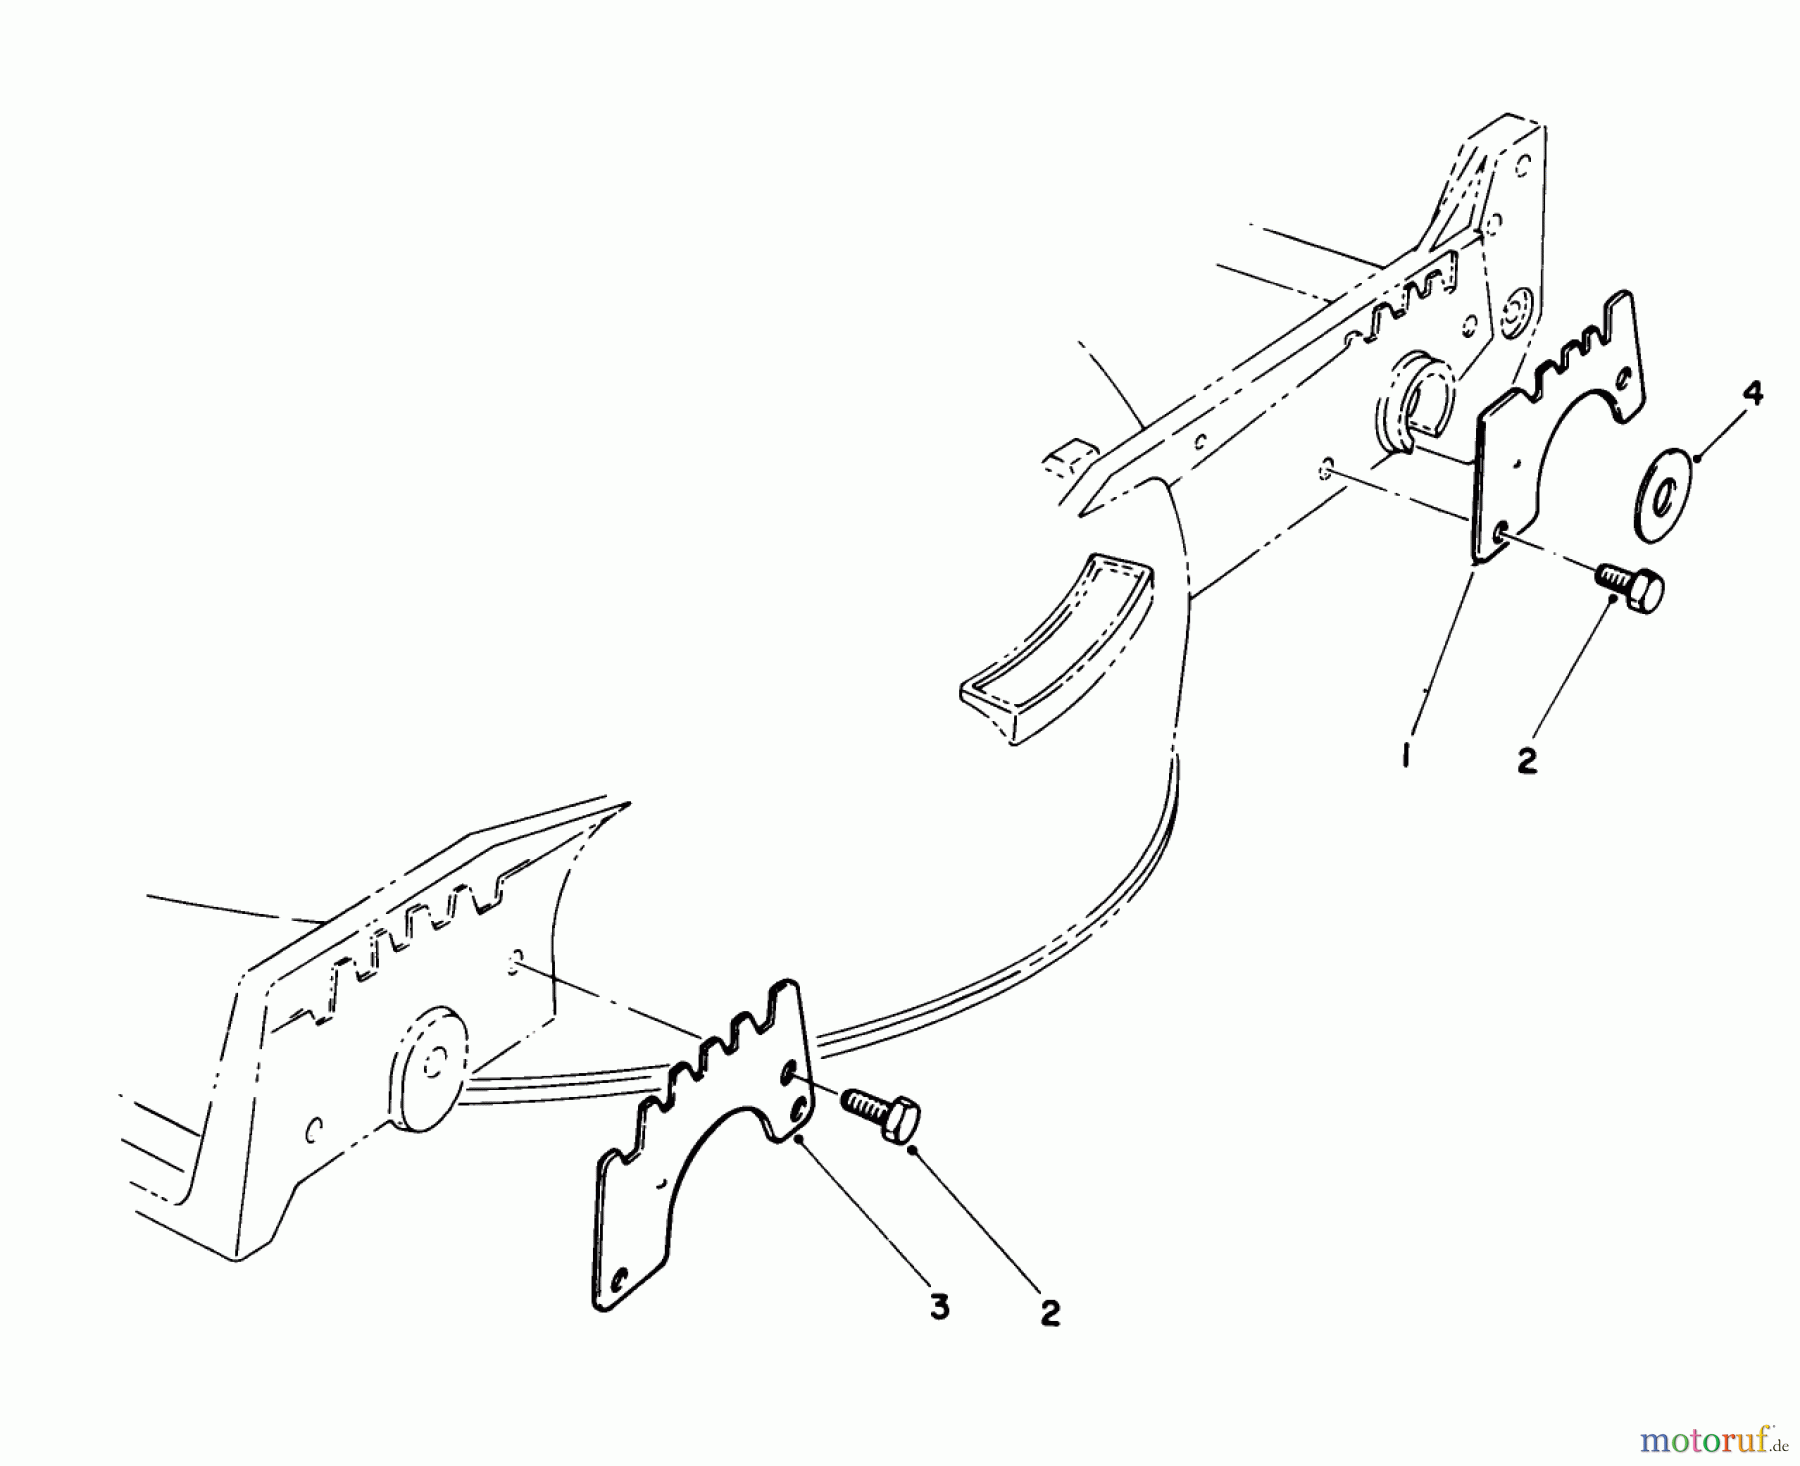  Toro Neu Mowers, Walk-Behind Seite 1 20511 - Toro Lawnmower, 1989 (9000001-9999999) WEAR PLATE KIT MODEL NO. 49-4080 (OPTIONAL)